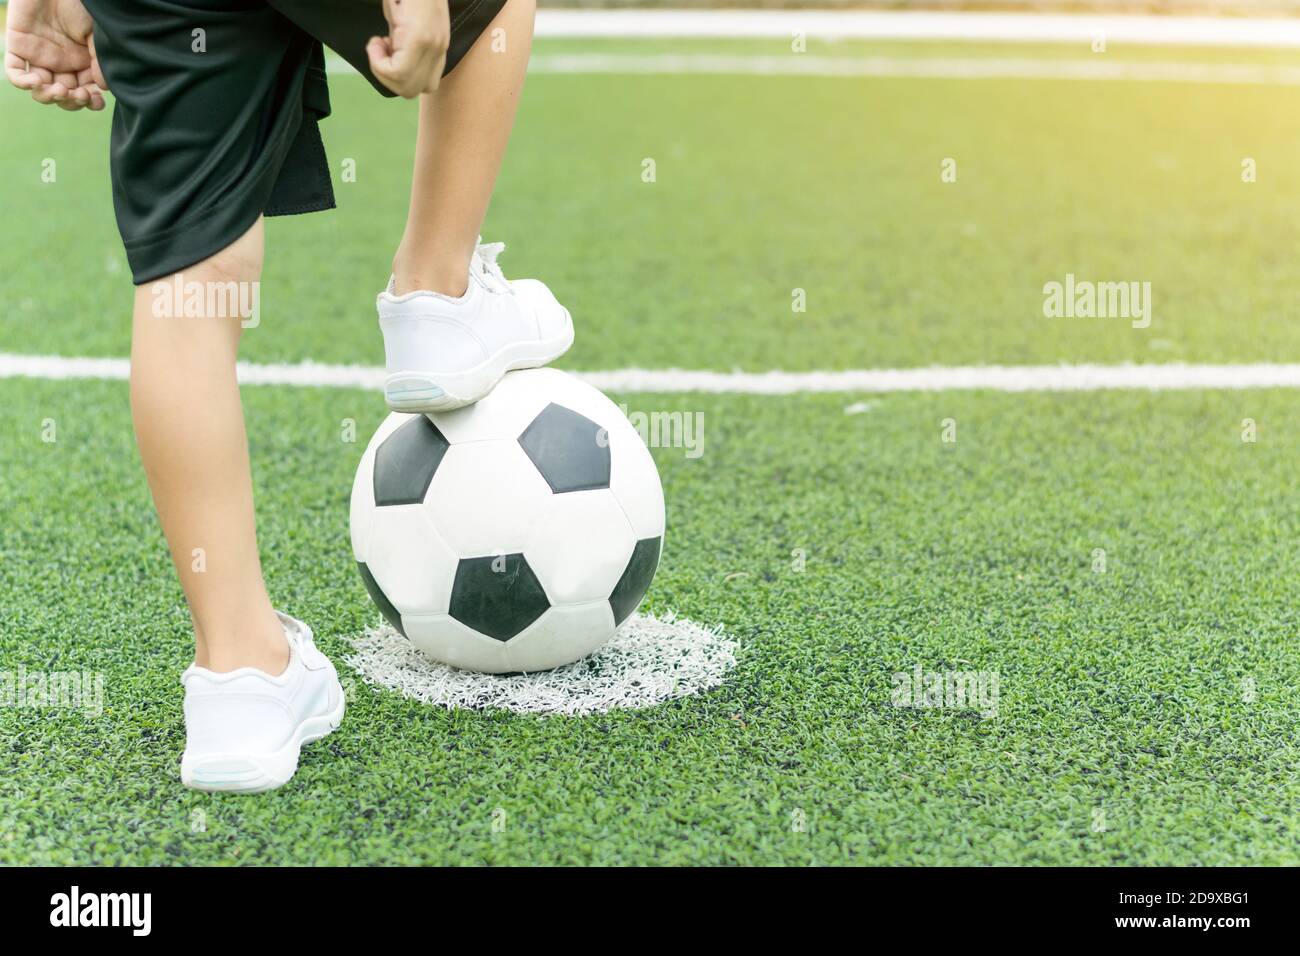 Pies de un niño con zapatillas blancas pisando una pelota de fútbol en el medio del campo de fútbol. Foto de stock